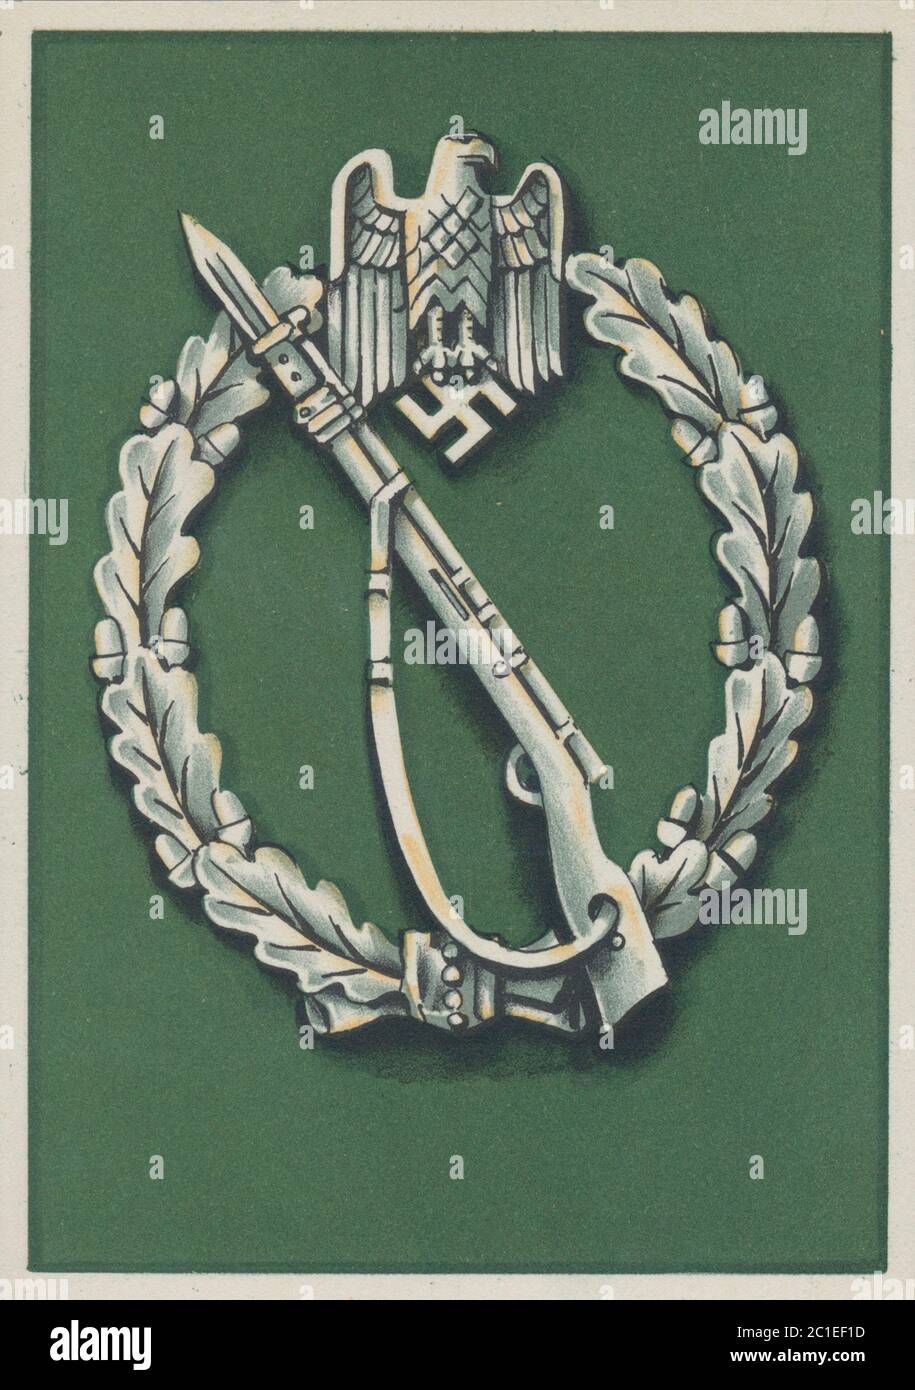 Tarjeta de donación de Caridades invernales en tiempo de guerra que muestra la medalla de la unidad de fusiles "tormer" de infantería. 1941 Foto de stock